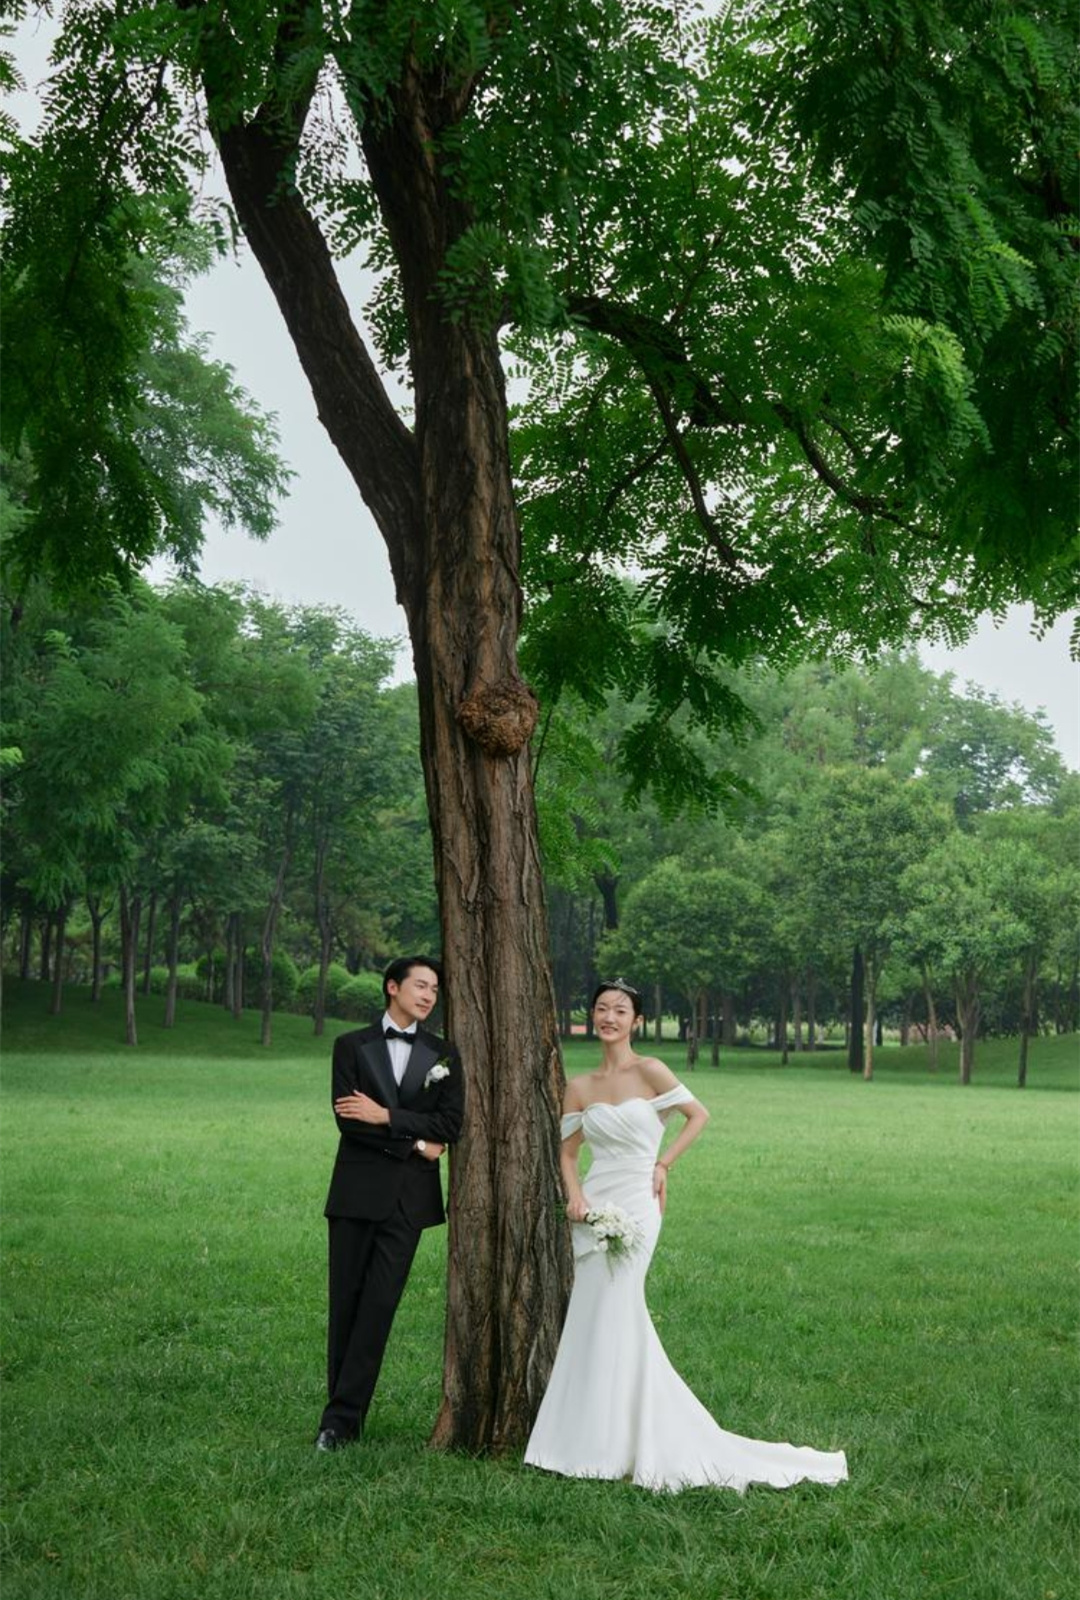 外景系列婚纱照·清新草坪·广州婚纱照